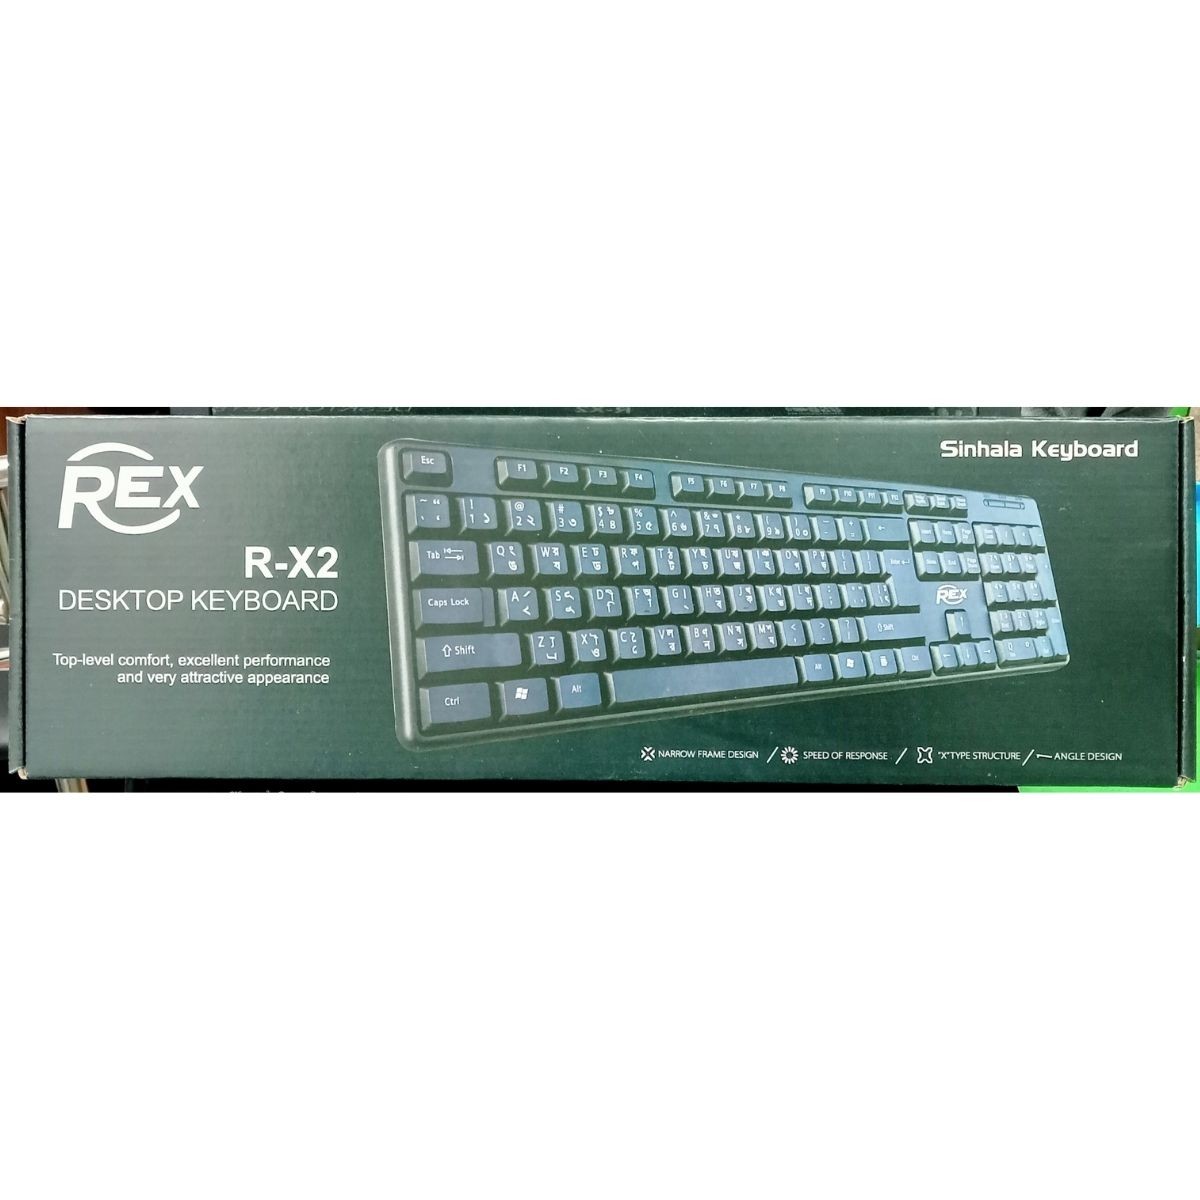 Rex Standard Office Keyboard R-X2